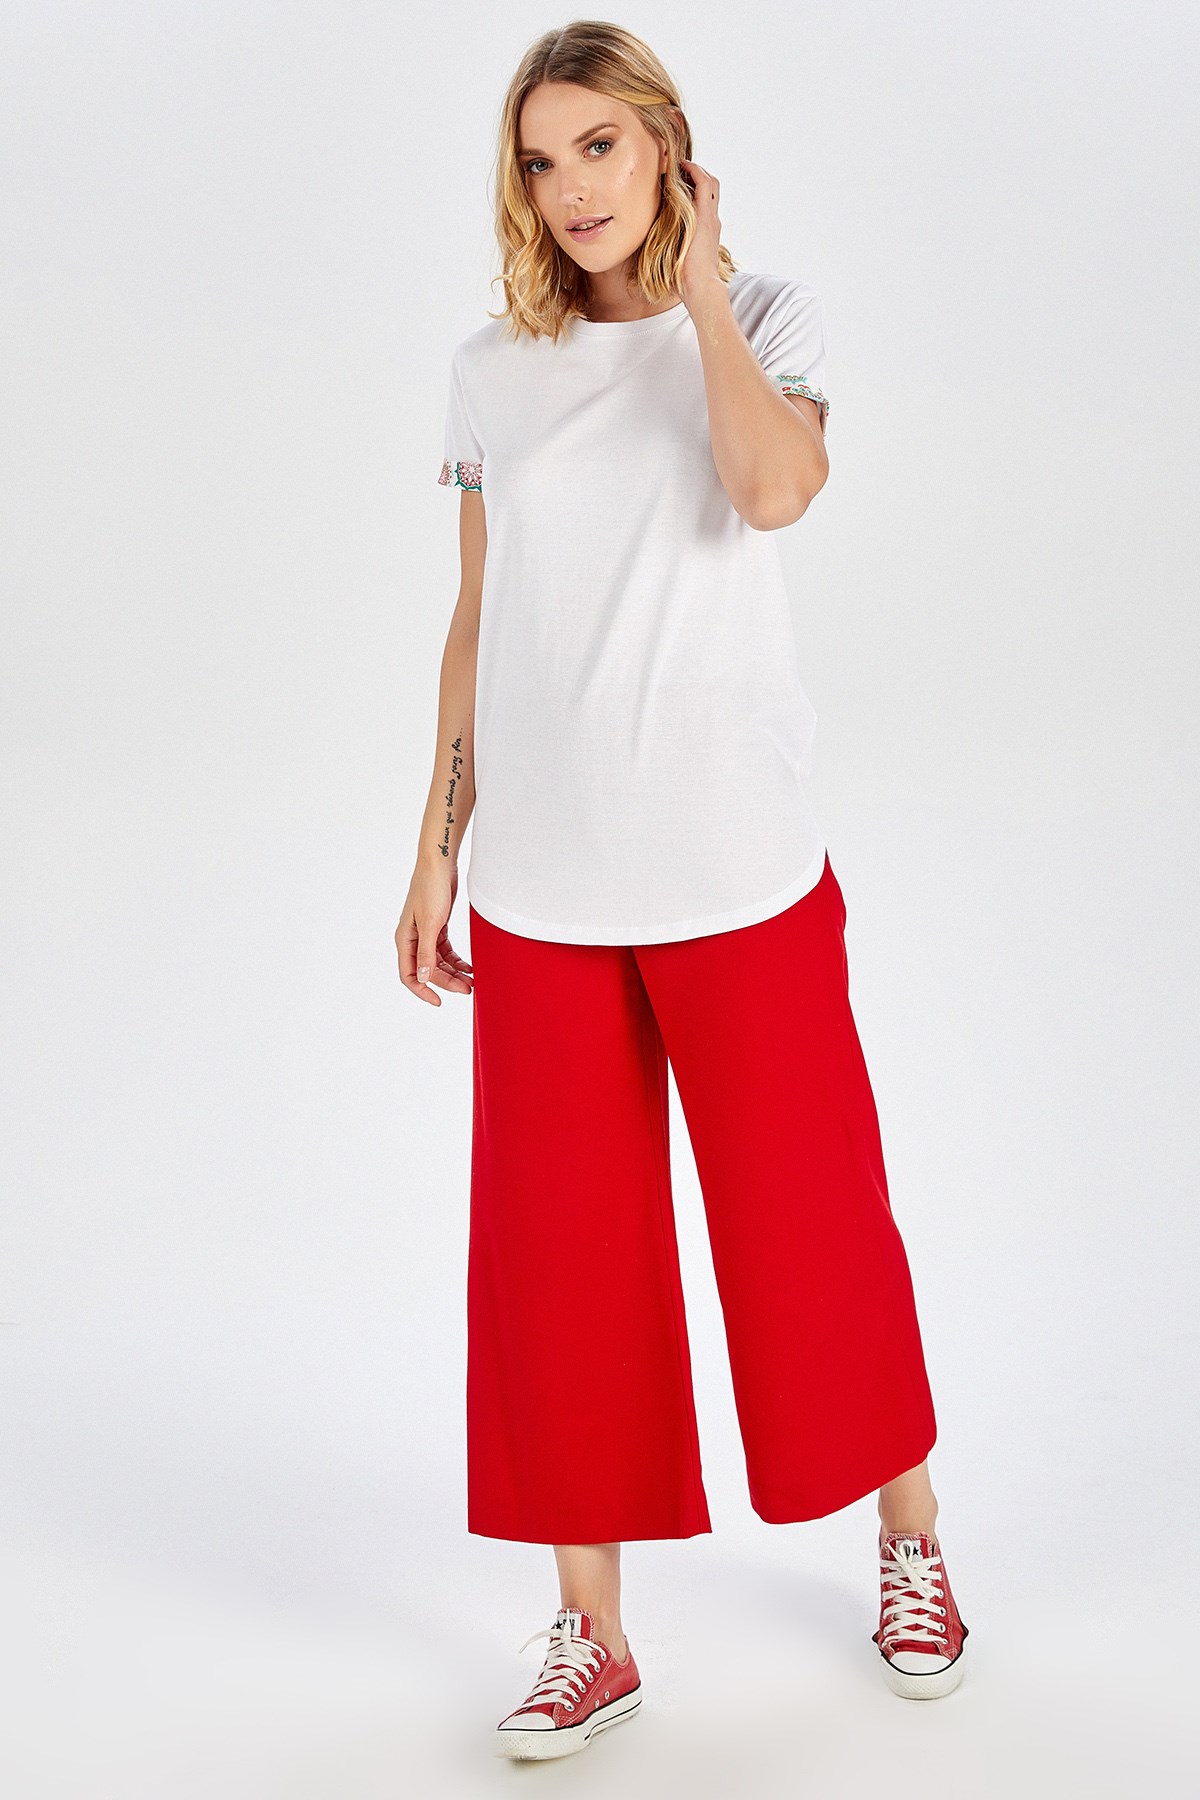 Peraluna Kol Ucu Desenli Uzun Beyaz Pamuklu Kadın T-Shirt